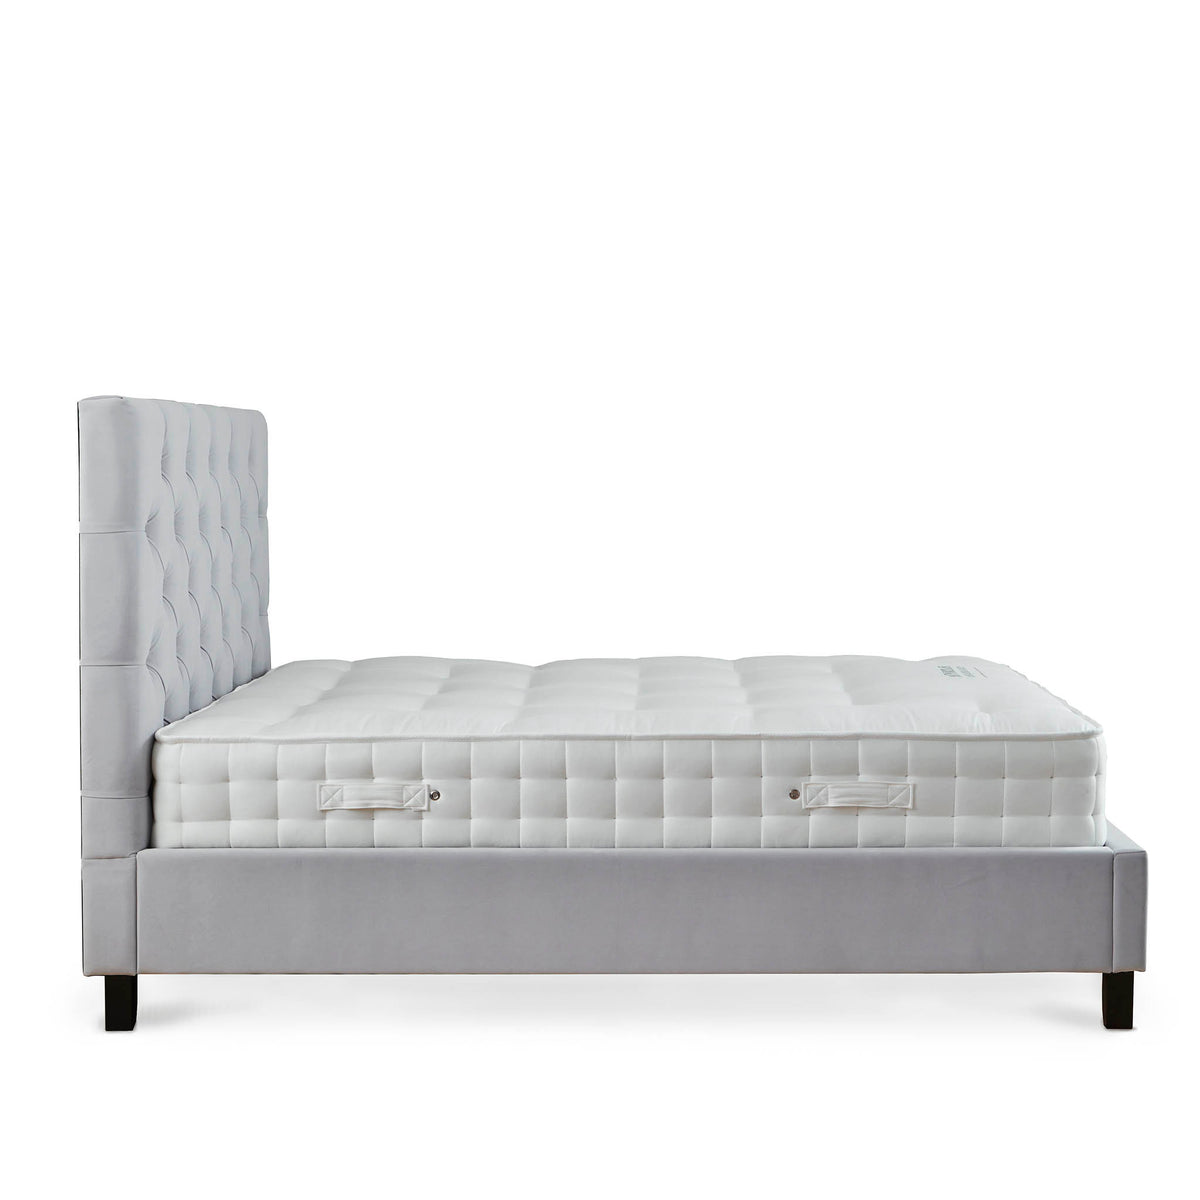 Finley Silver Mink Velvet Upholstered Bed Frame side view